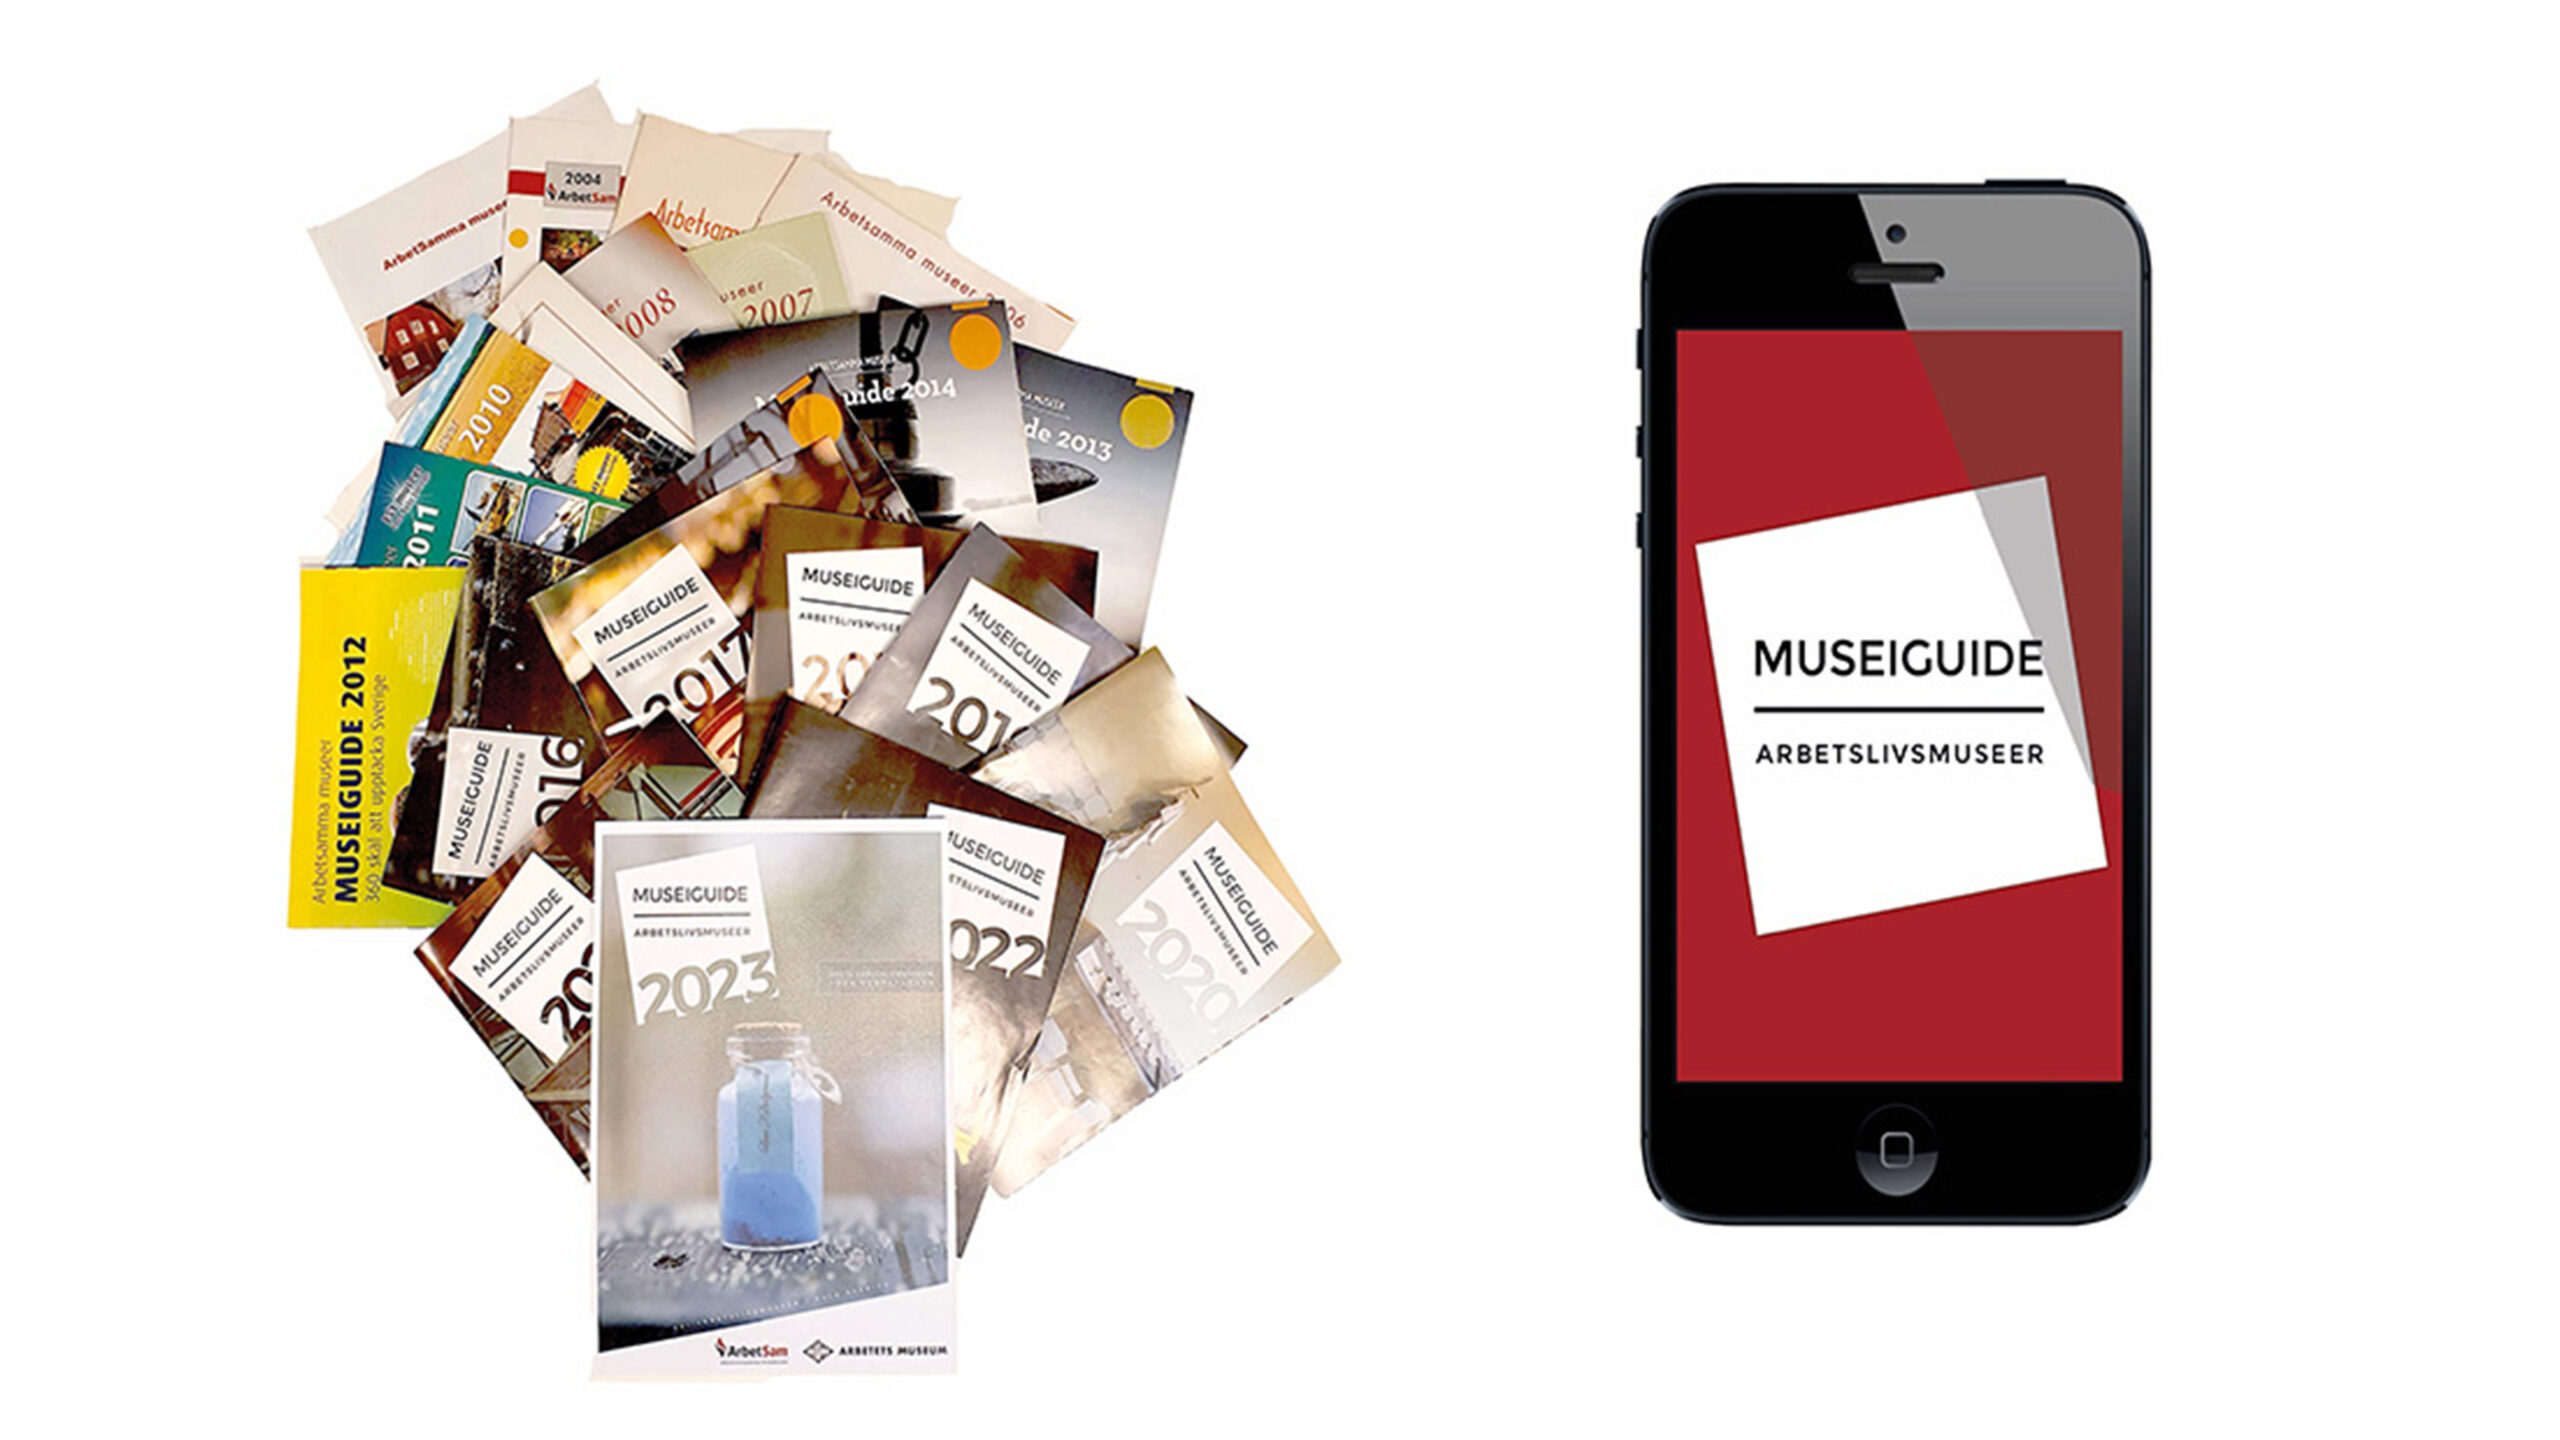 Museiguide som katalog och app på vit botten